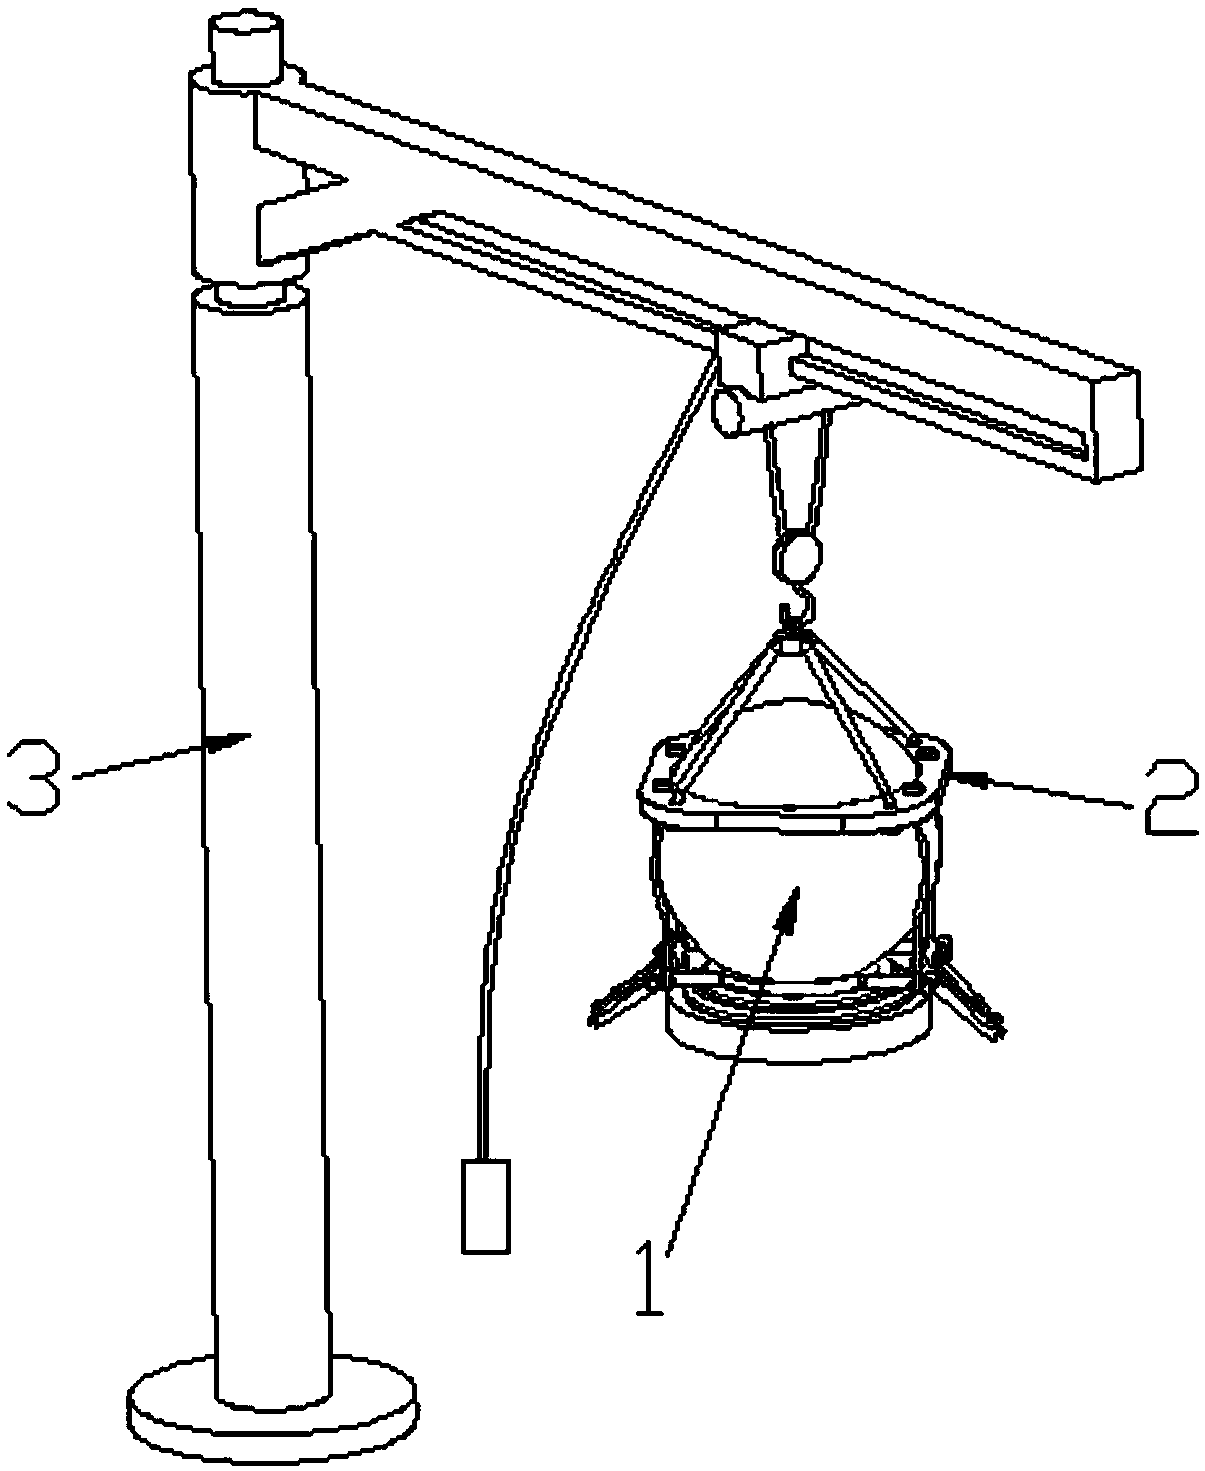 Vehicle-warding-off stone block hoisting device